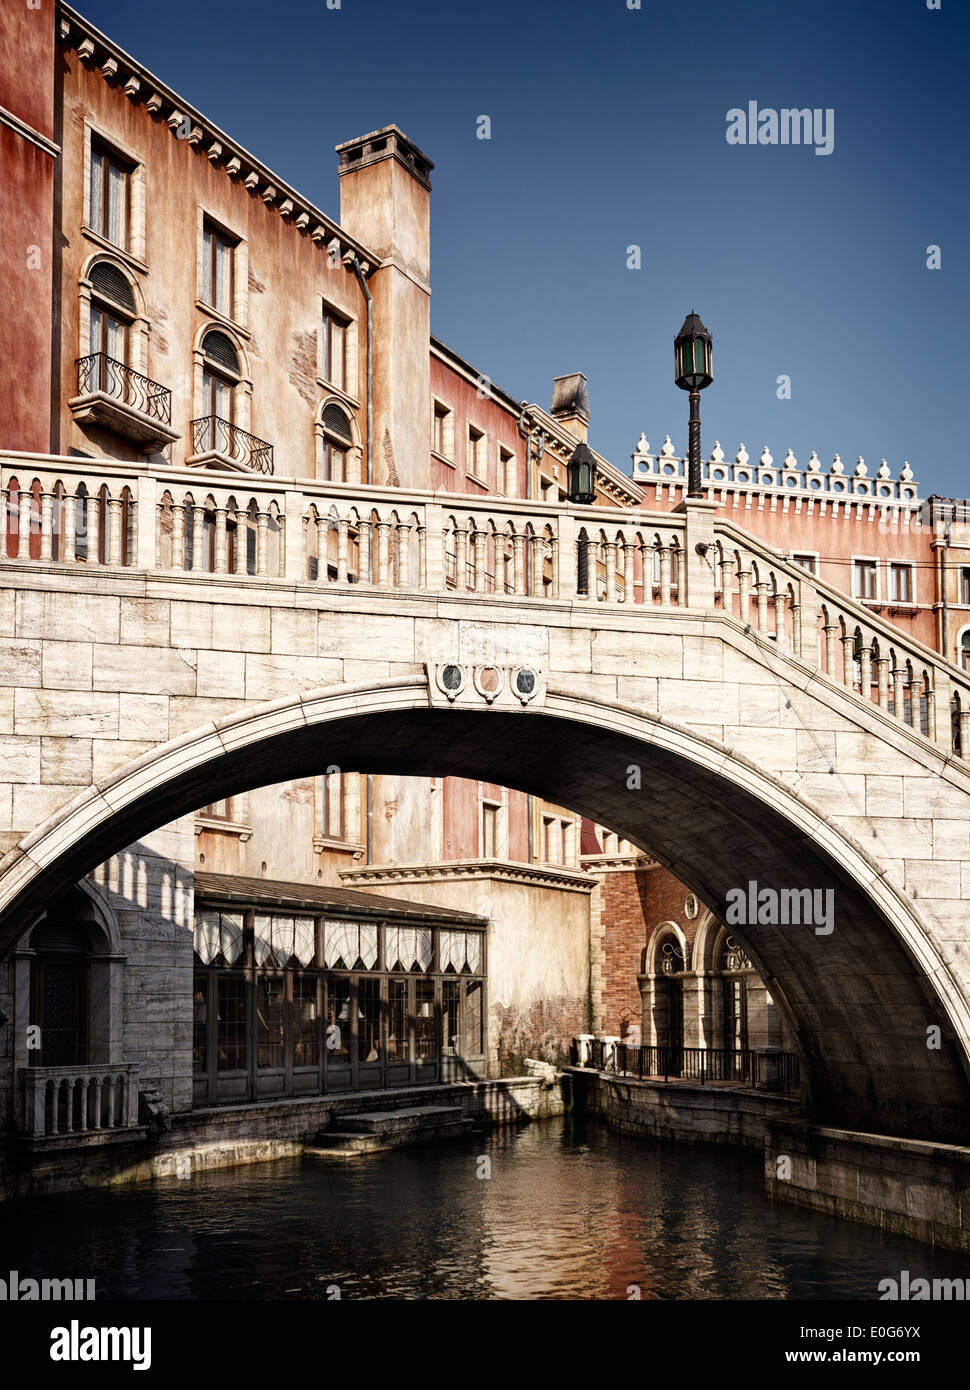 Brücke über einen Kanal mit venezianischer Architektur Gebäude Stockfoto